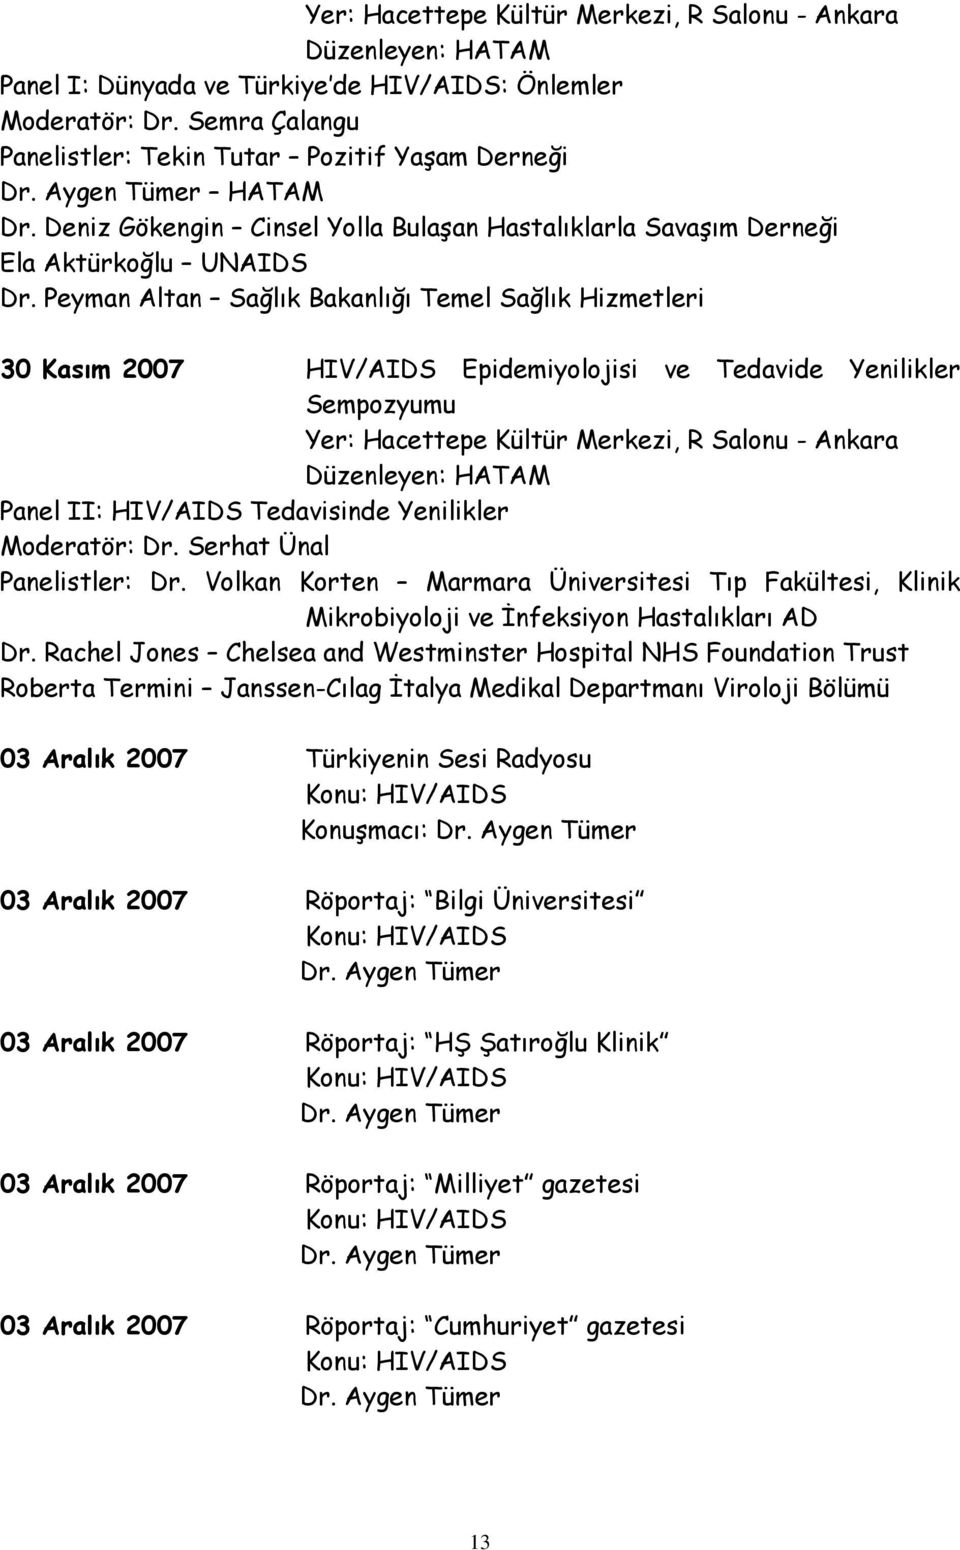 Peyman Altan Sağlık Bakanlığı Temel Sağlık Hizmetleri 30 Kasım 2007 HIV/AIDS Epidemiyolojisi ve Tedavide Yenilikler Sempozyumu Yer: Hacettepe Kültür Merkezi, R Salonu - Ankara Düzenleyen: HATAM Panel